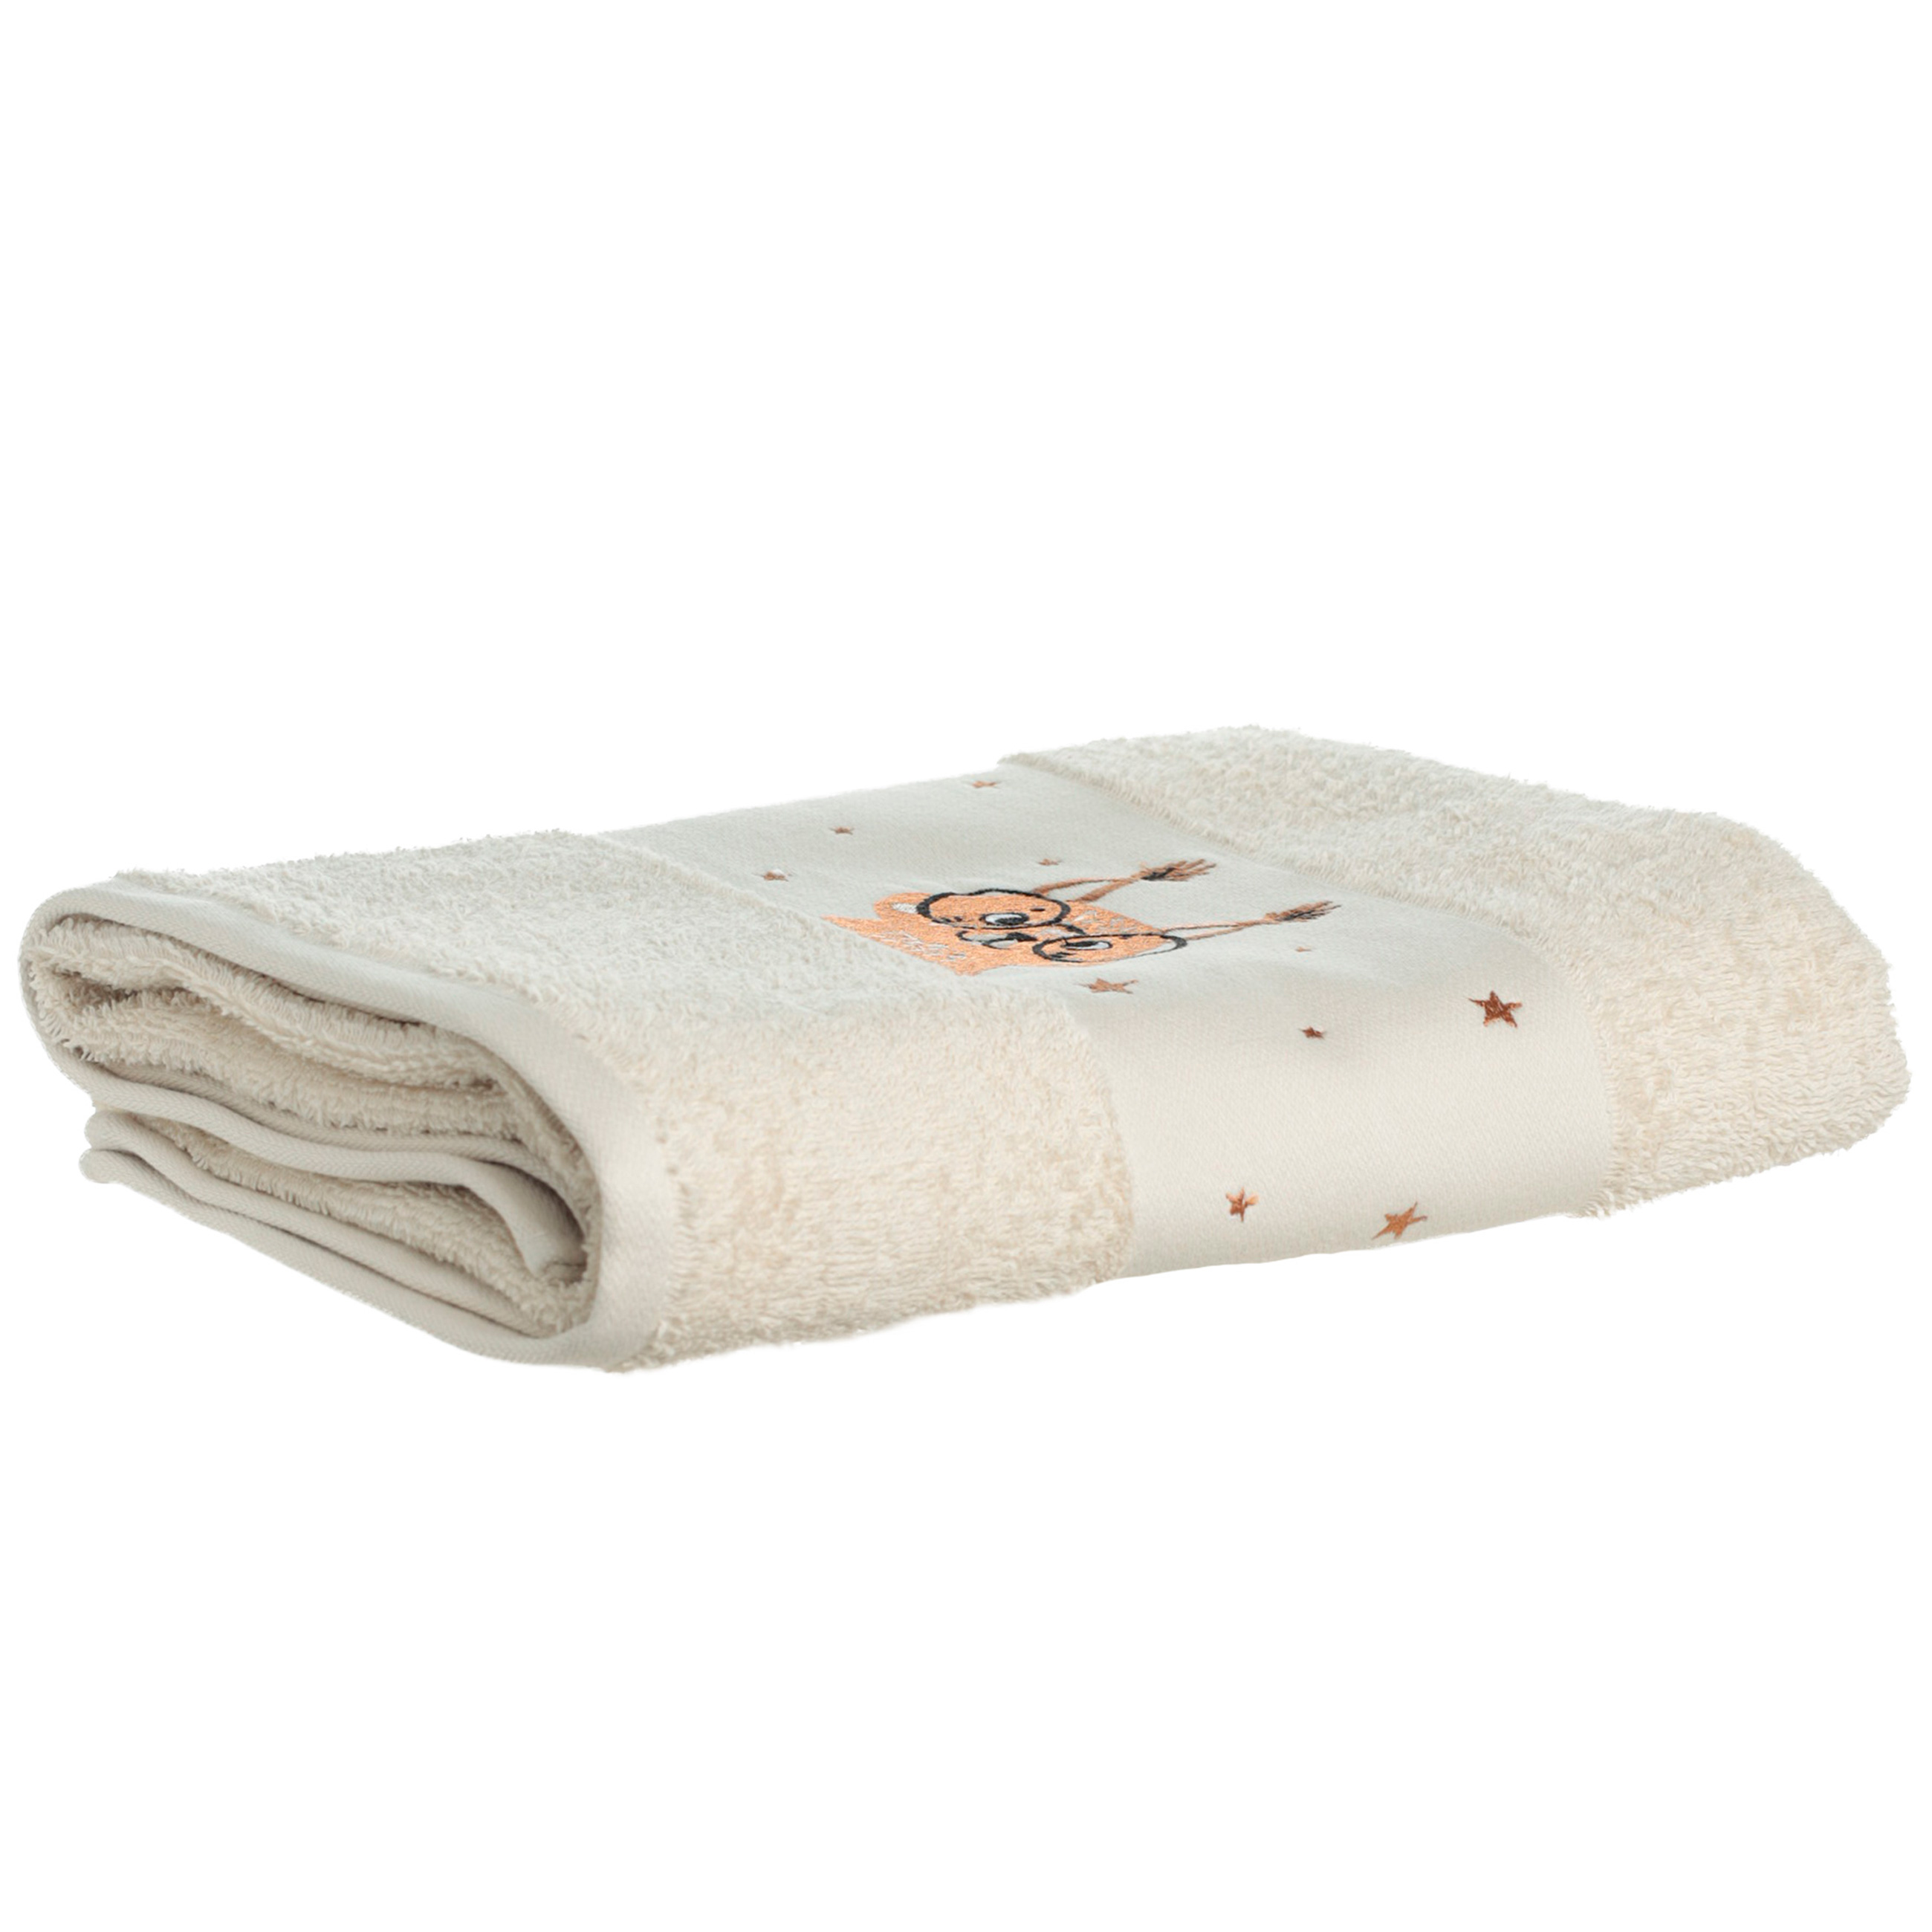 Children's towel, 70x120 cm, cotton, beige, Squirrel, Forest Animals изображение № 5